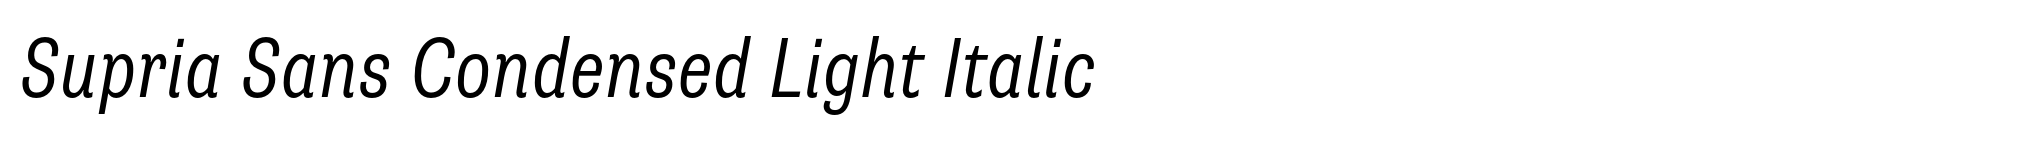 Supria Sans Condensed Light Italic image